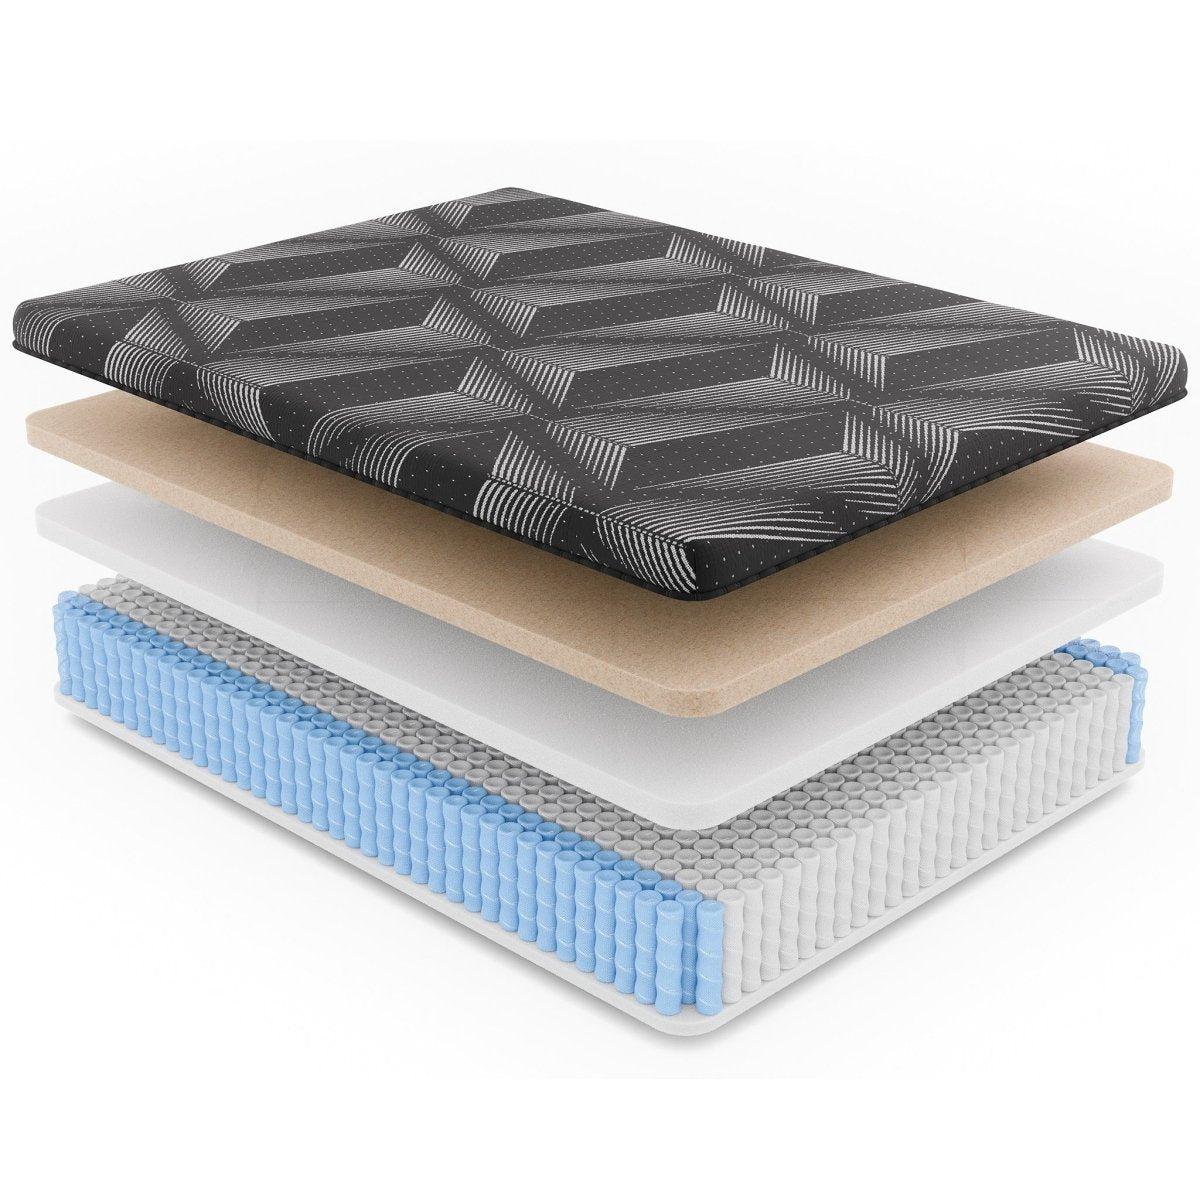 Medium Hybrid Memory Foam Mattress|Queen2Diamond Mattress